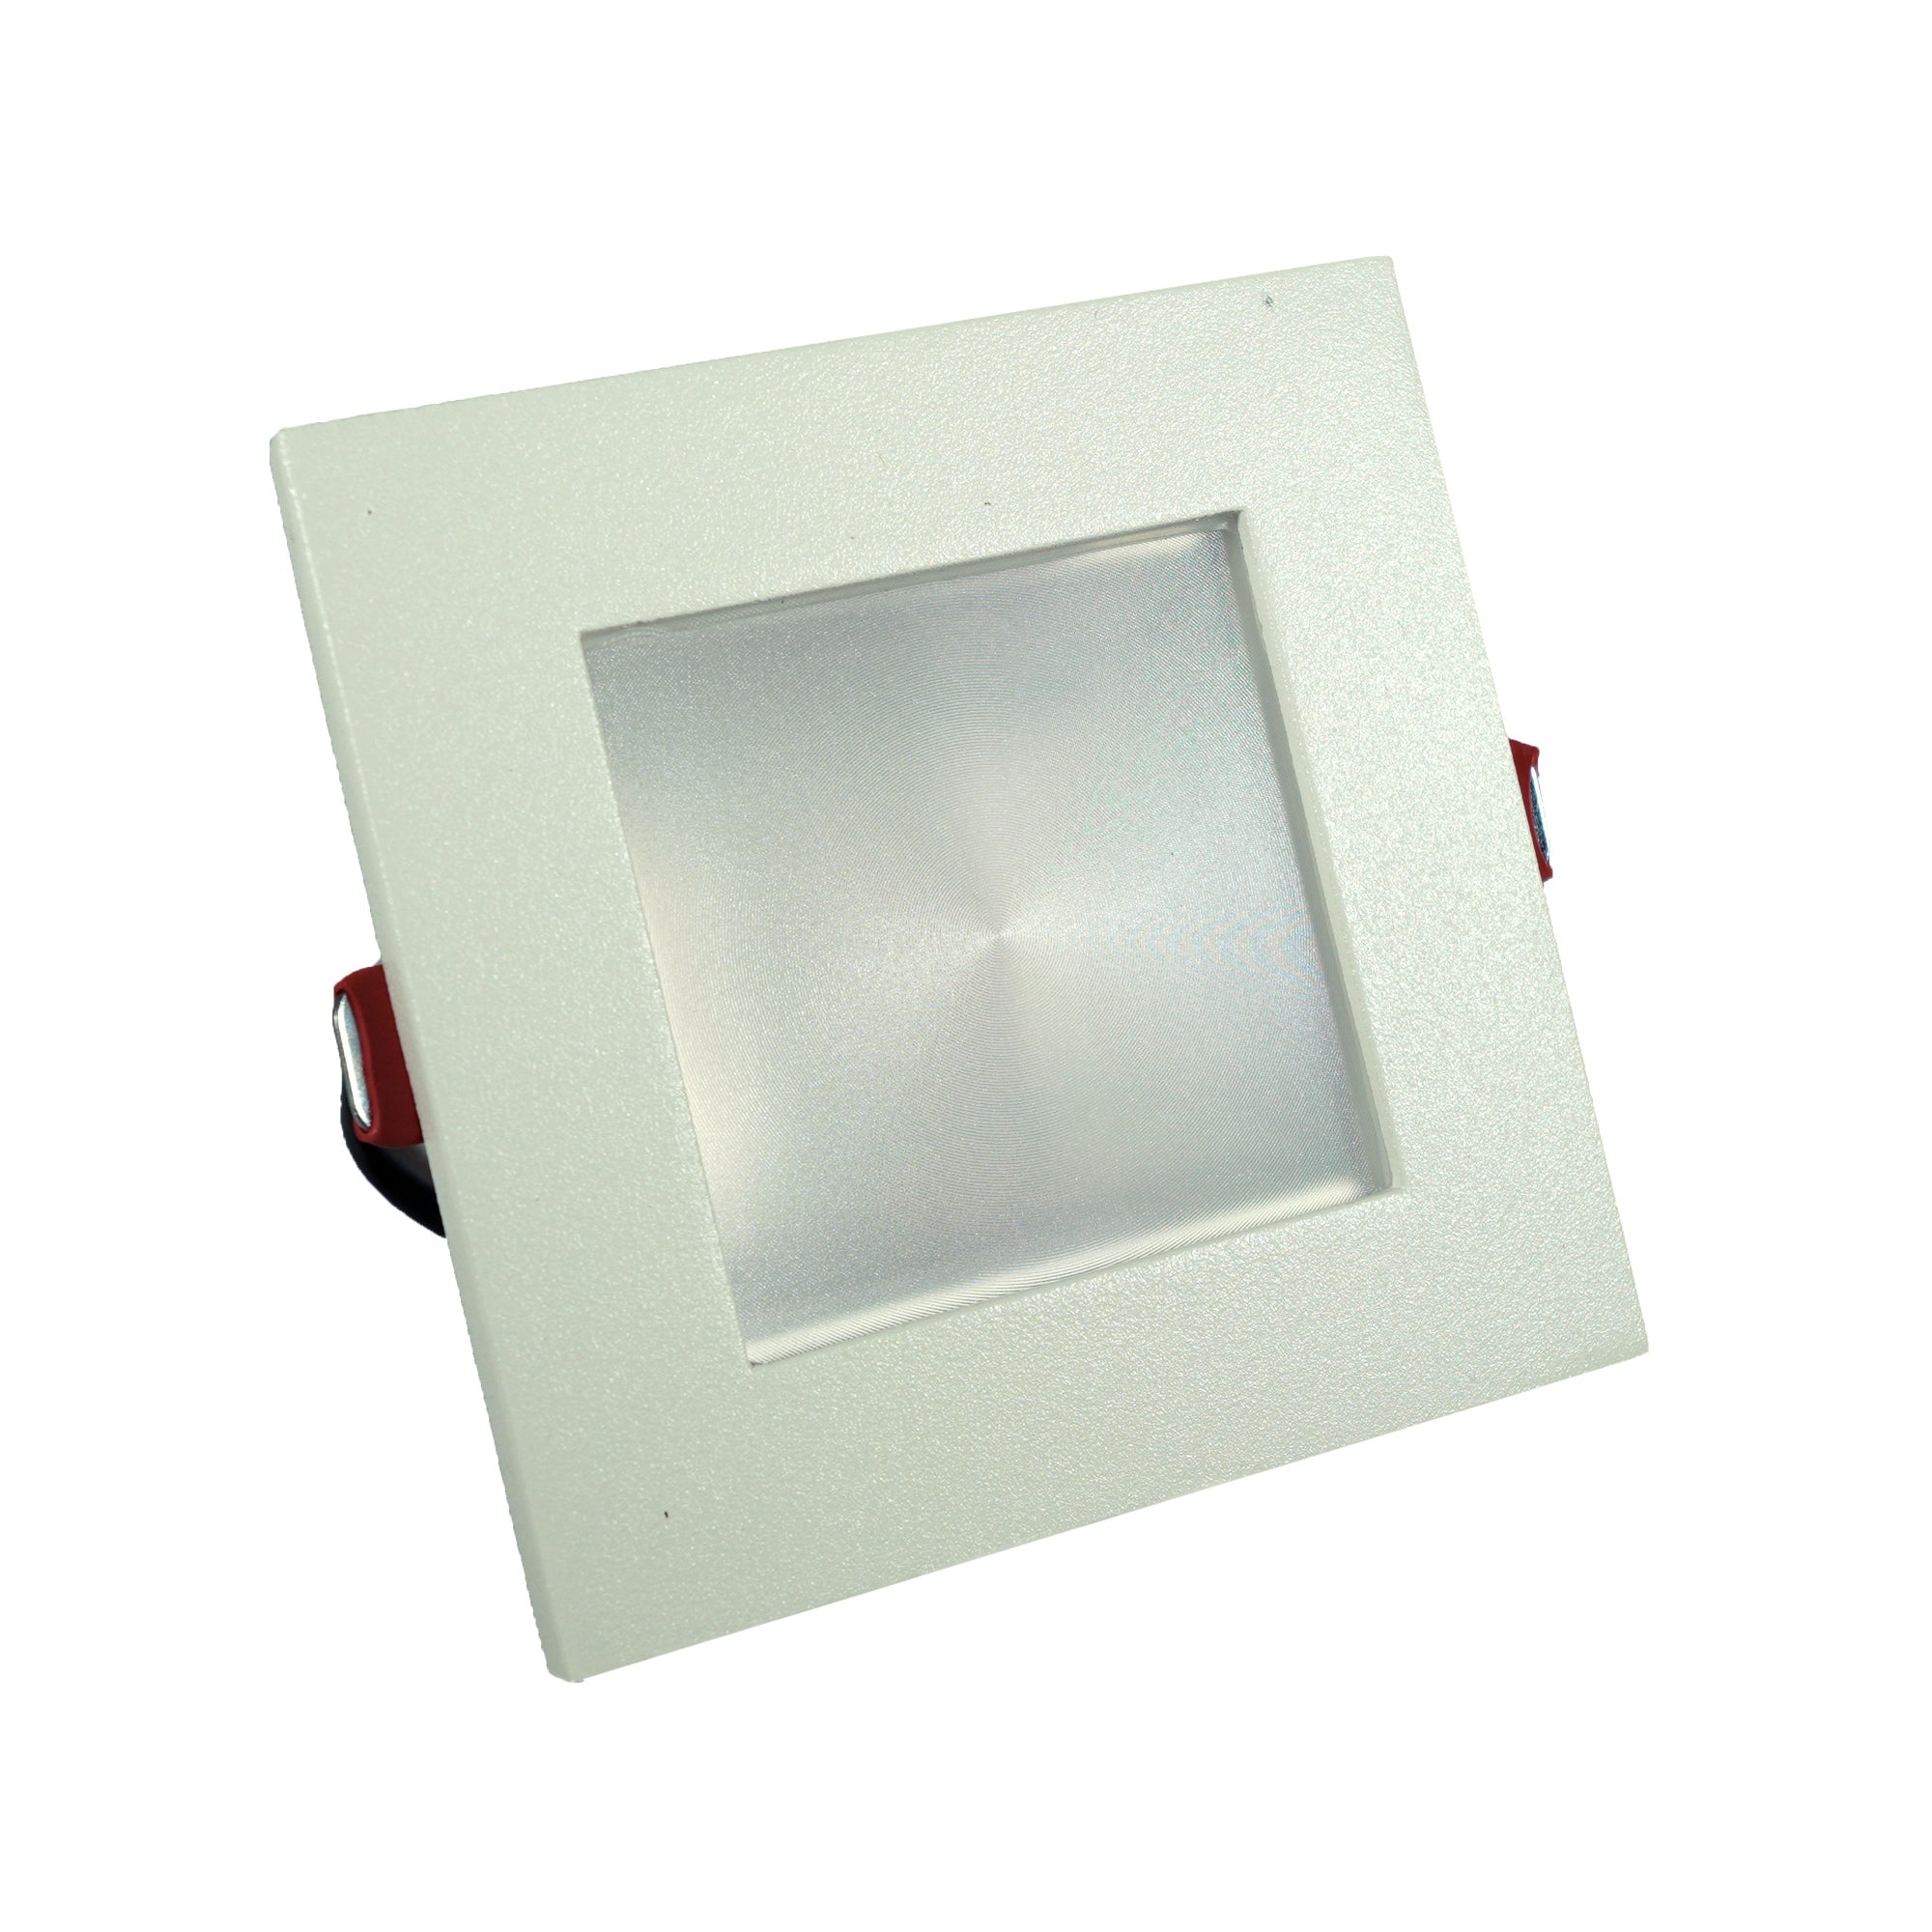 Luminario downlight LED cuadrado para empotrar en techo TL-4443.B30